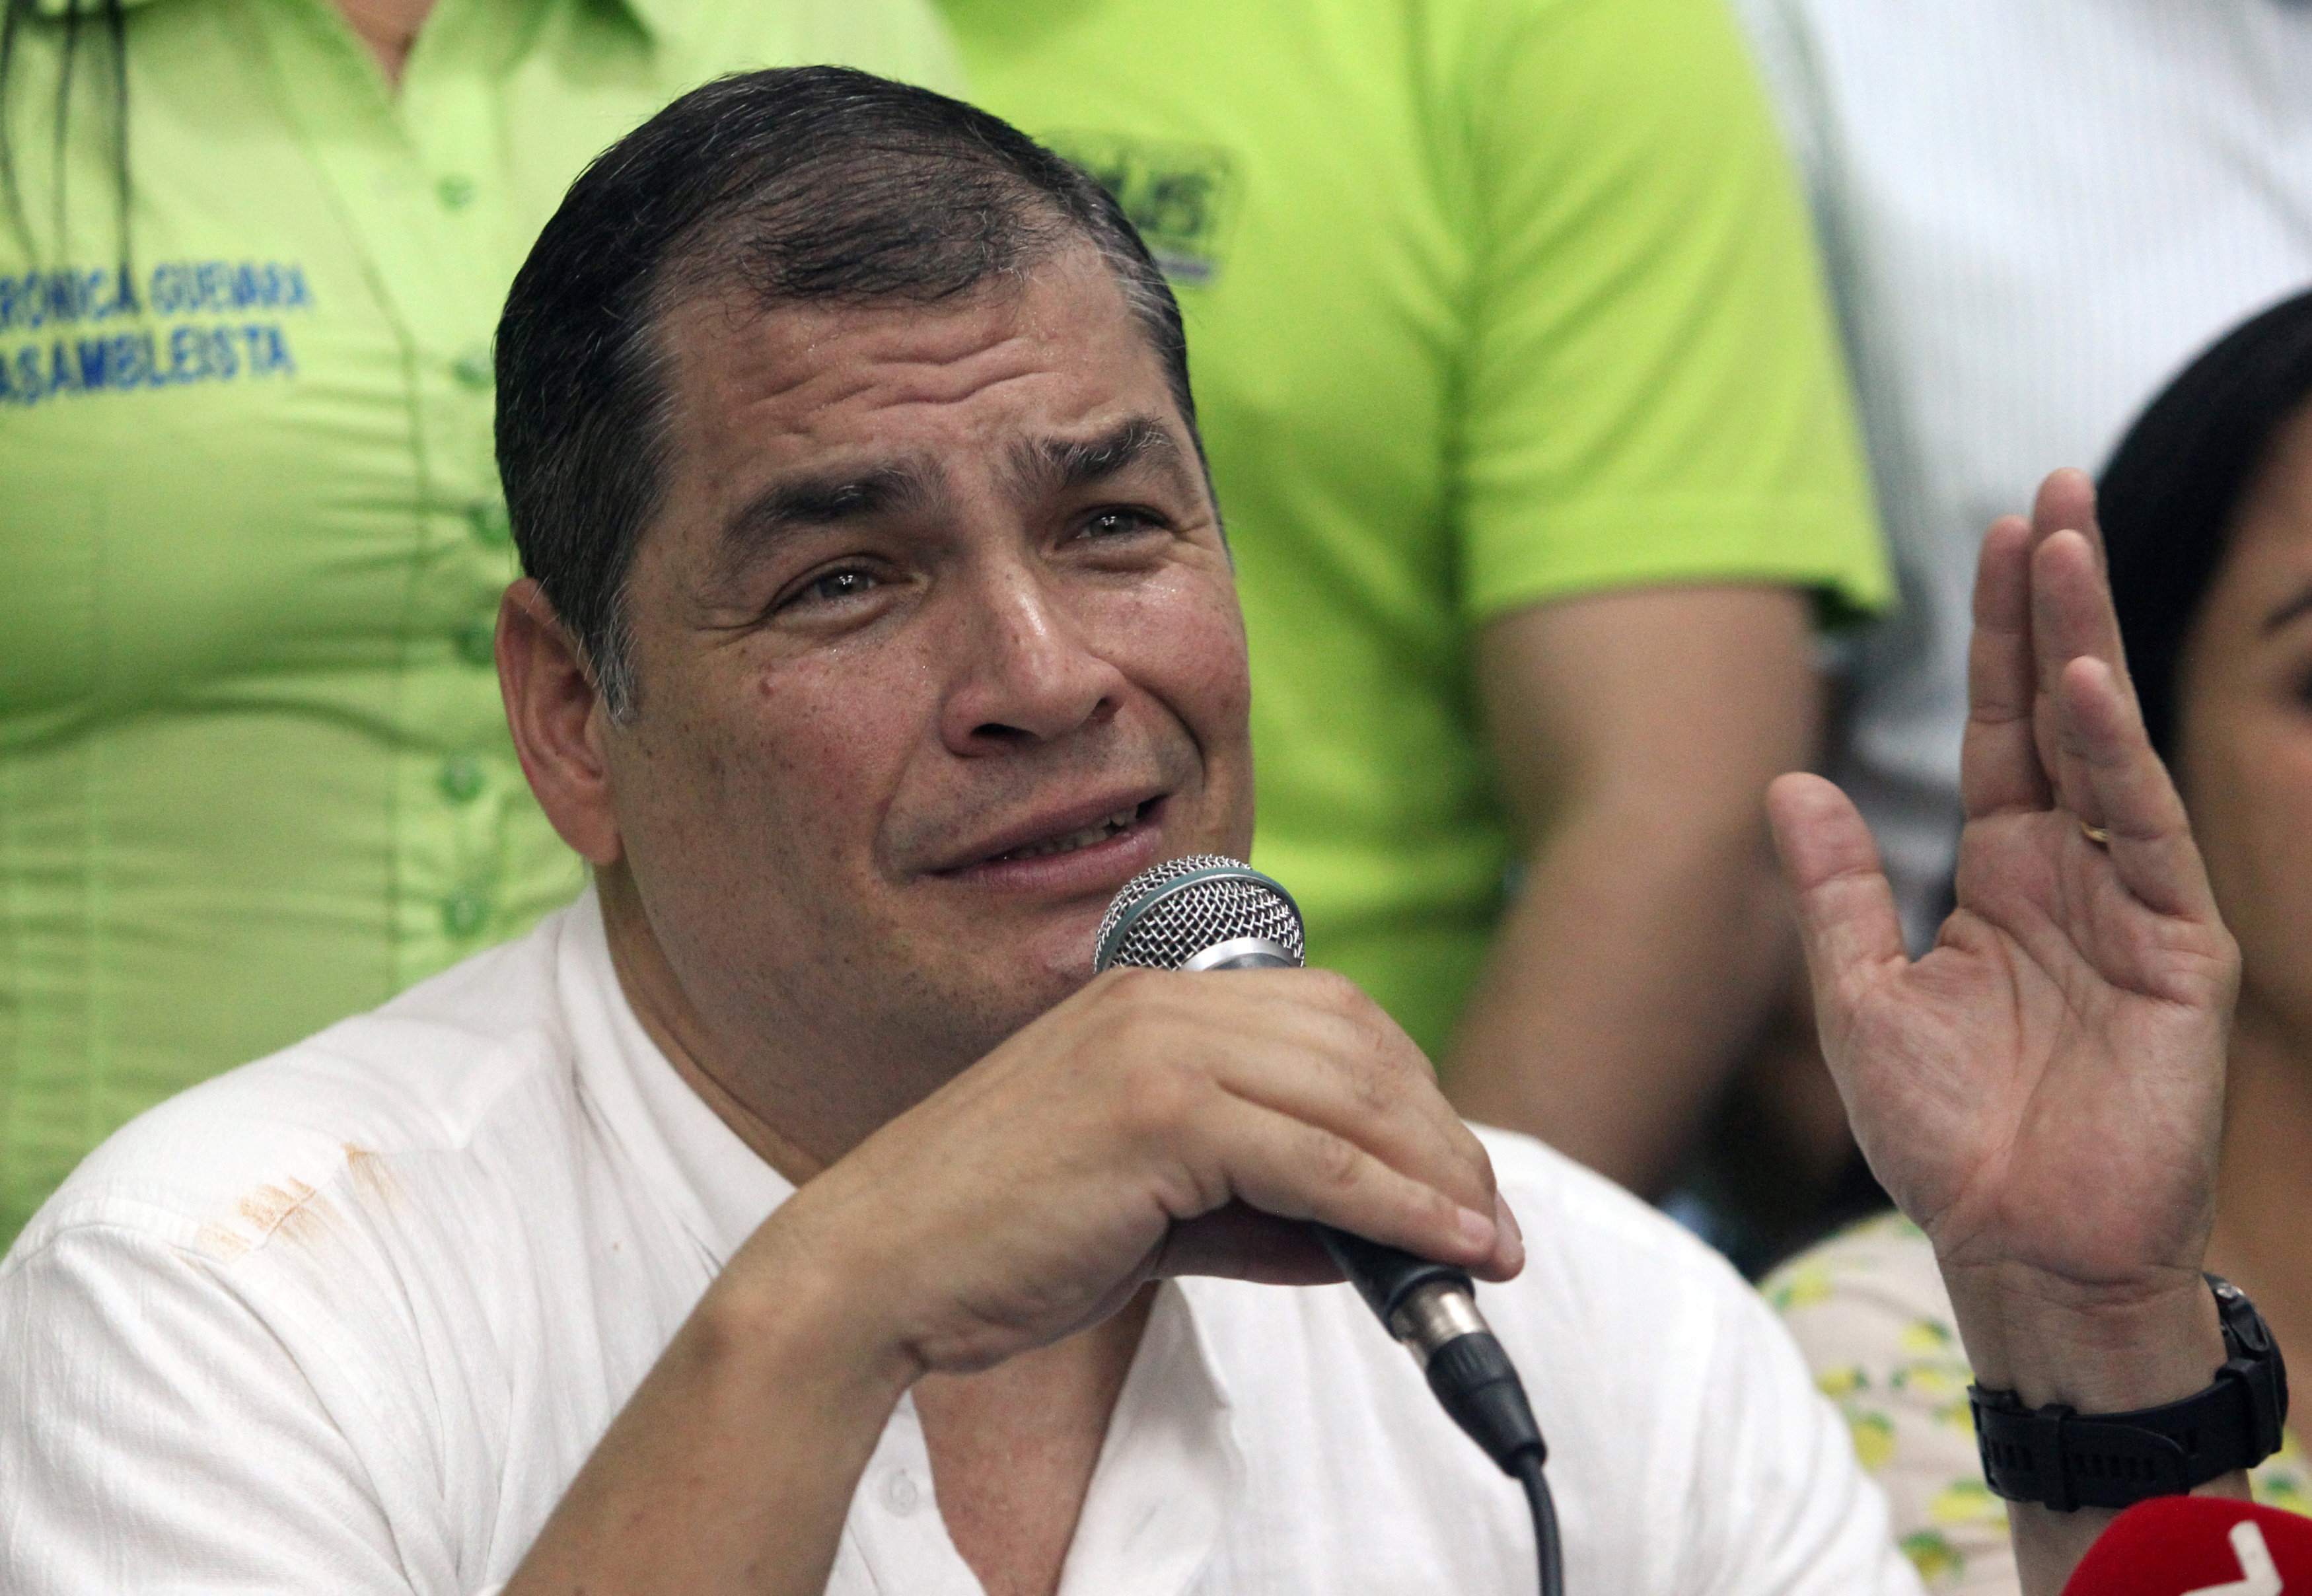 Contraloría de Ecuador halla indicios penales contra Correa por mal uso de deuda